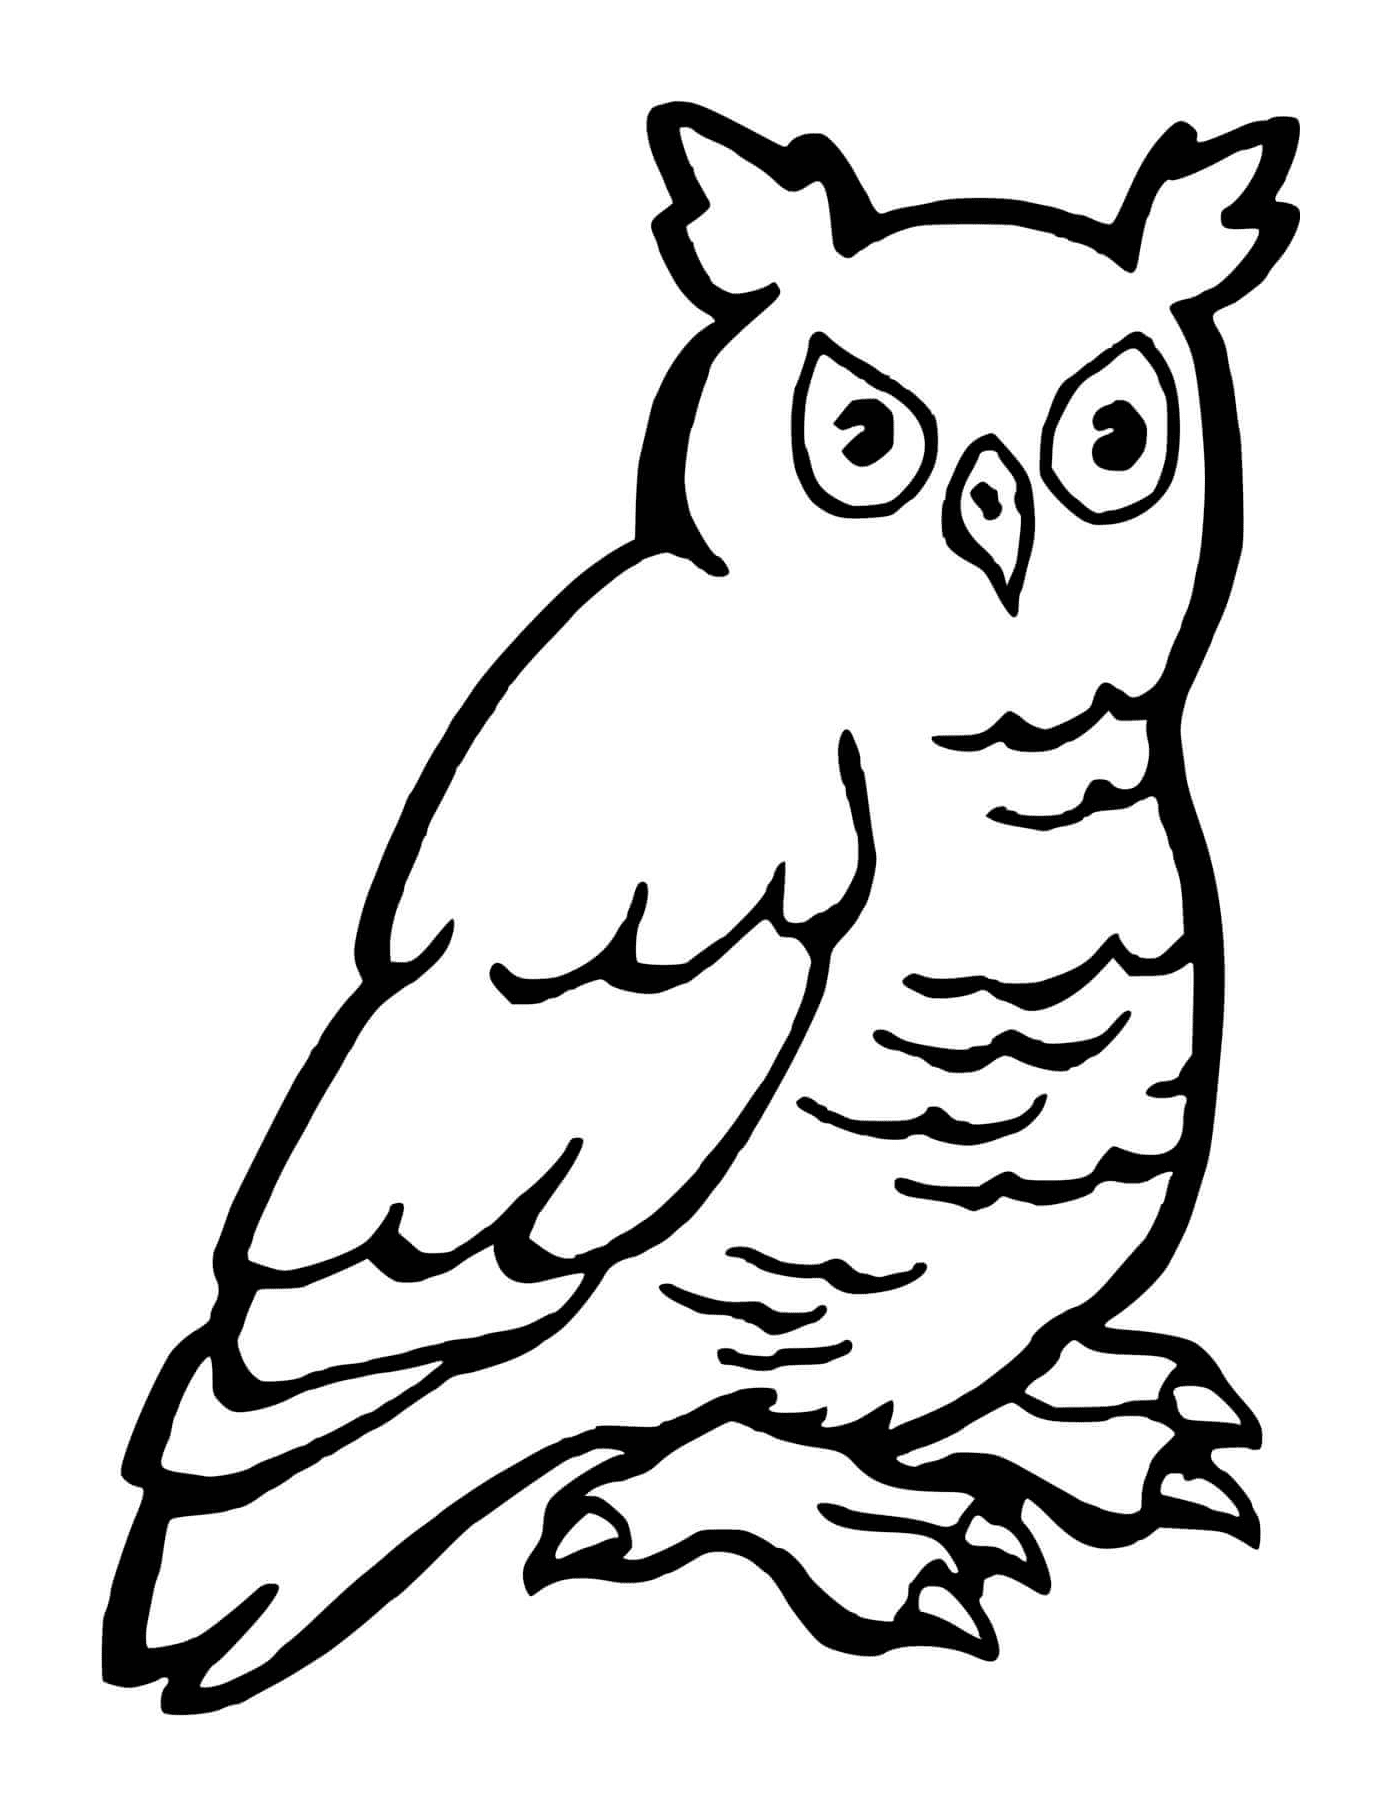  Grand duke owl to color 